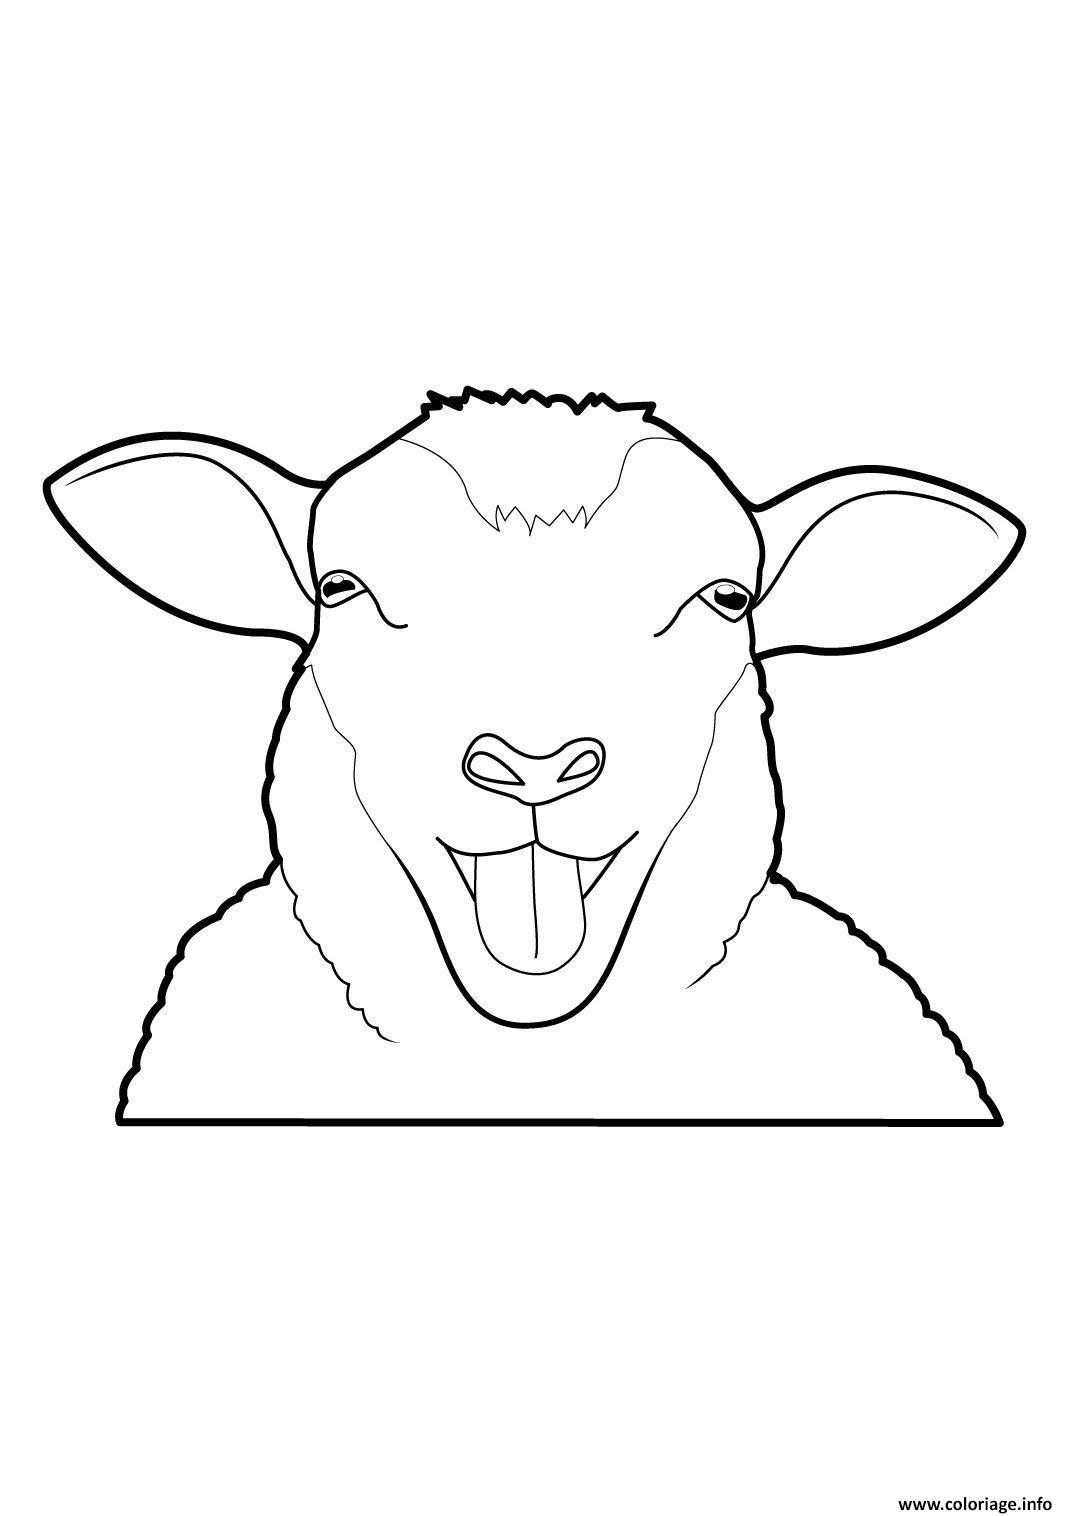 Dessin tete de mouton aid Coloriage Gratuit à Imprimer